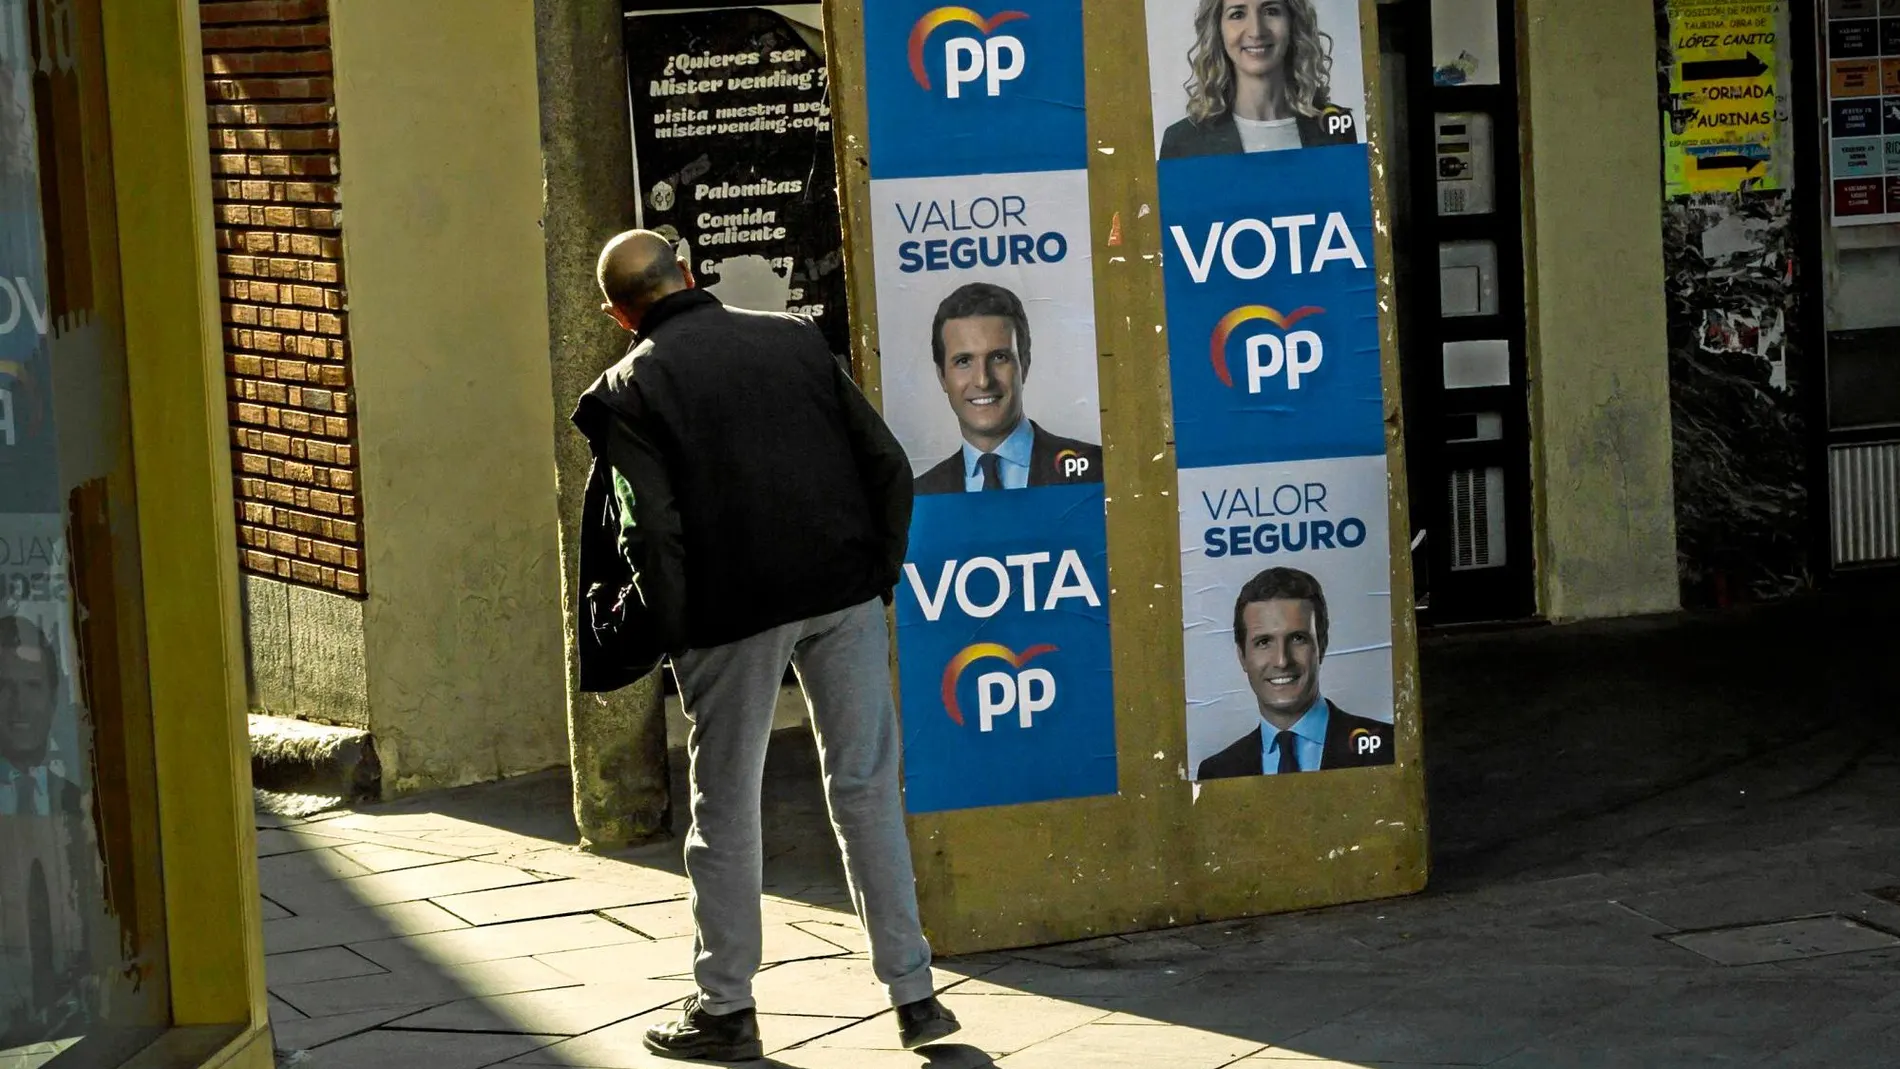 Los vecinos de Arévalo añoran la época de Aznar, pero ven en Casado un candidato bien formado y con buenas ideas / Foto: Alberto R. Roldán